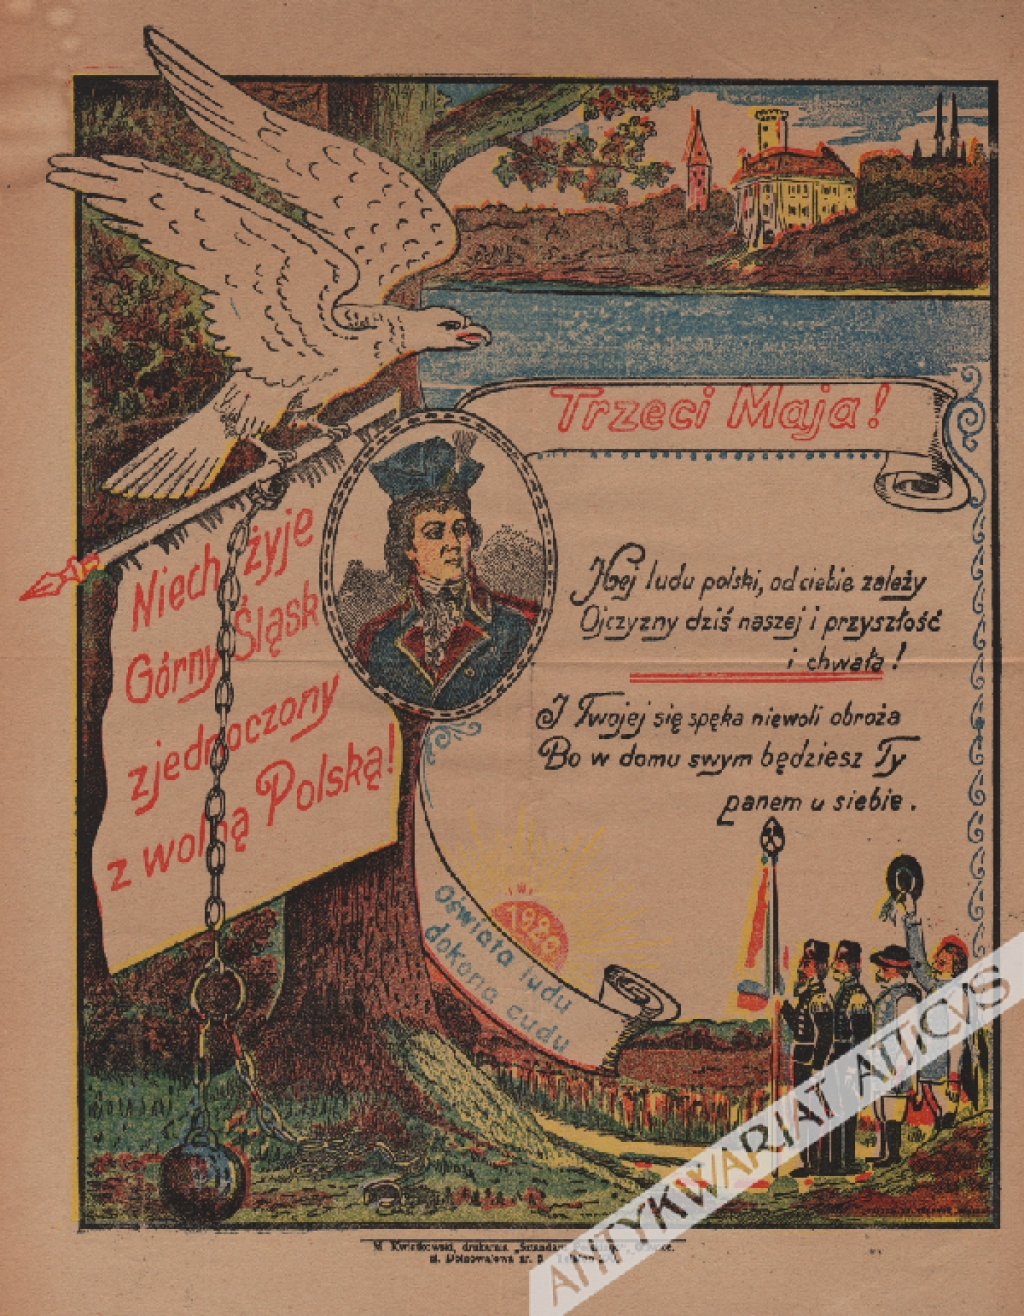 [plakat, 1920] Trzeci Maja! Niech żyje Górny Śląsk zjednoczony z wolną Polską!